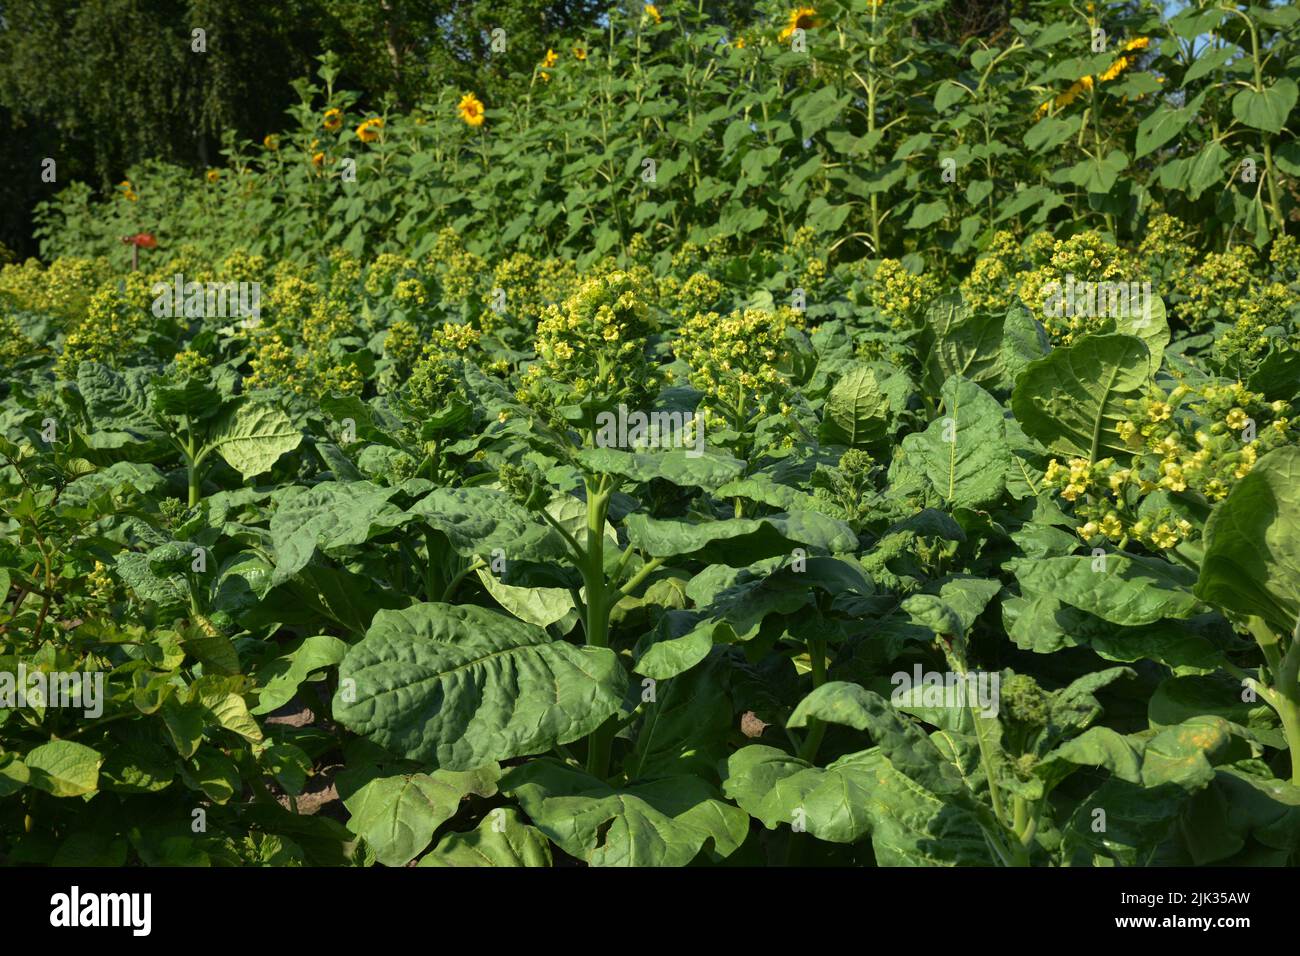 Anbau von Nicotiana rustica, Azteken-Tabak oder starkem Tabak. Blühende Nicotiana tabacum Pflanze mit gelben Blüten braucht Totheading, um besser zu fördern Stockfoto